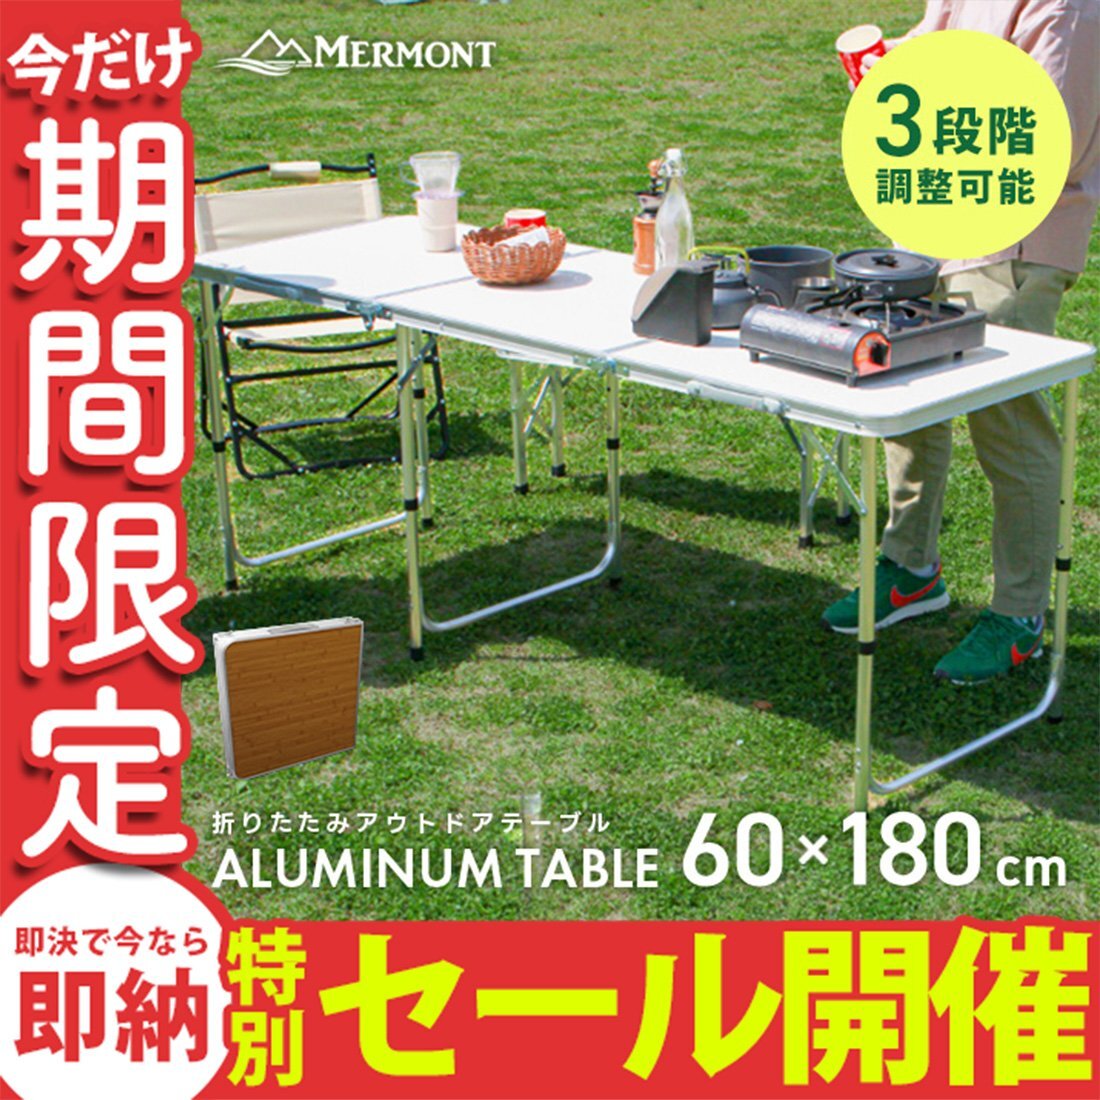 【数量限定セール】アウトドアテーブル 折りたたみ 60cm×180cm 高さ調整 軽量 アルミ レジャーテーブル キャンプ ローテーブル MERMONT_画像1